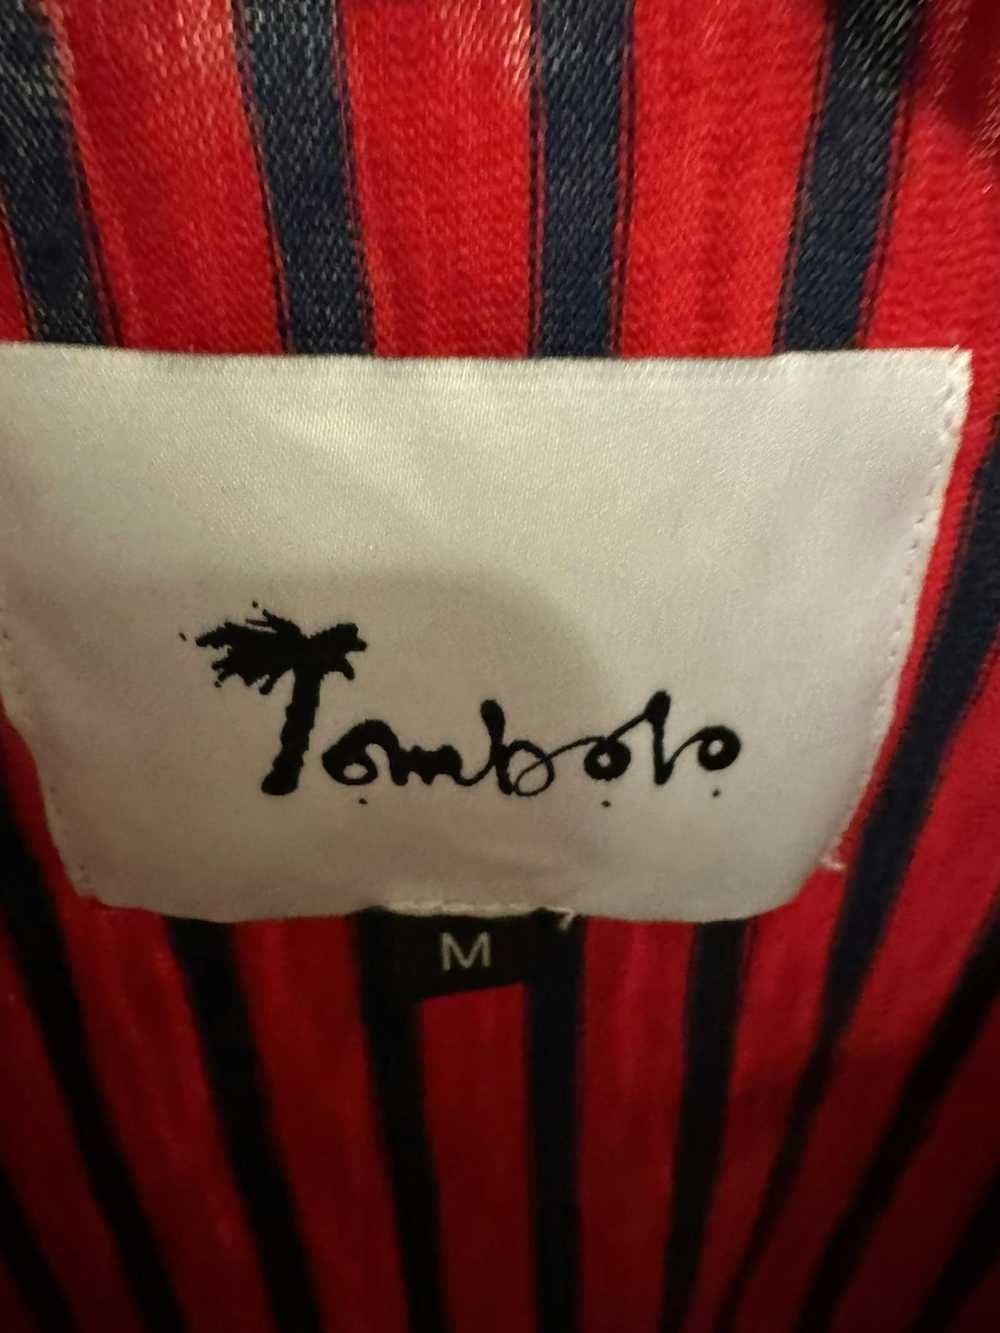 Tombolo Camp collar shirt - image 2